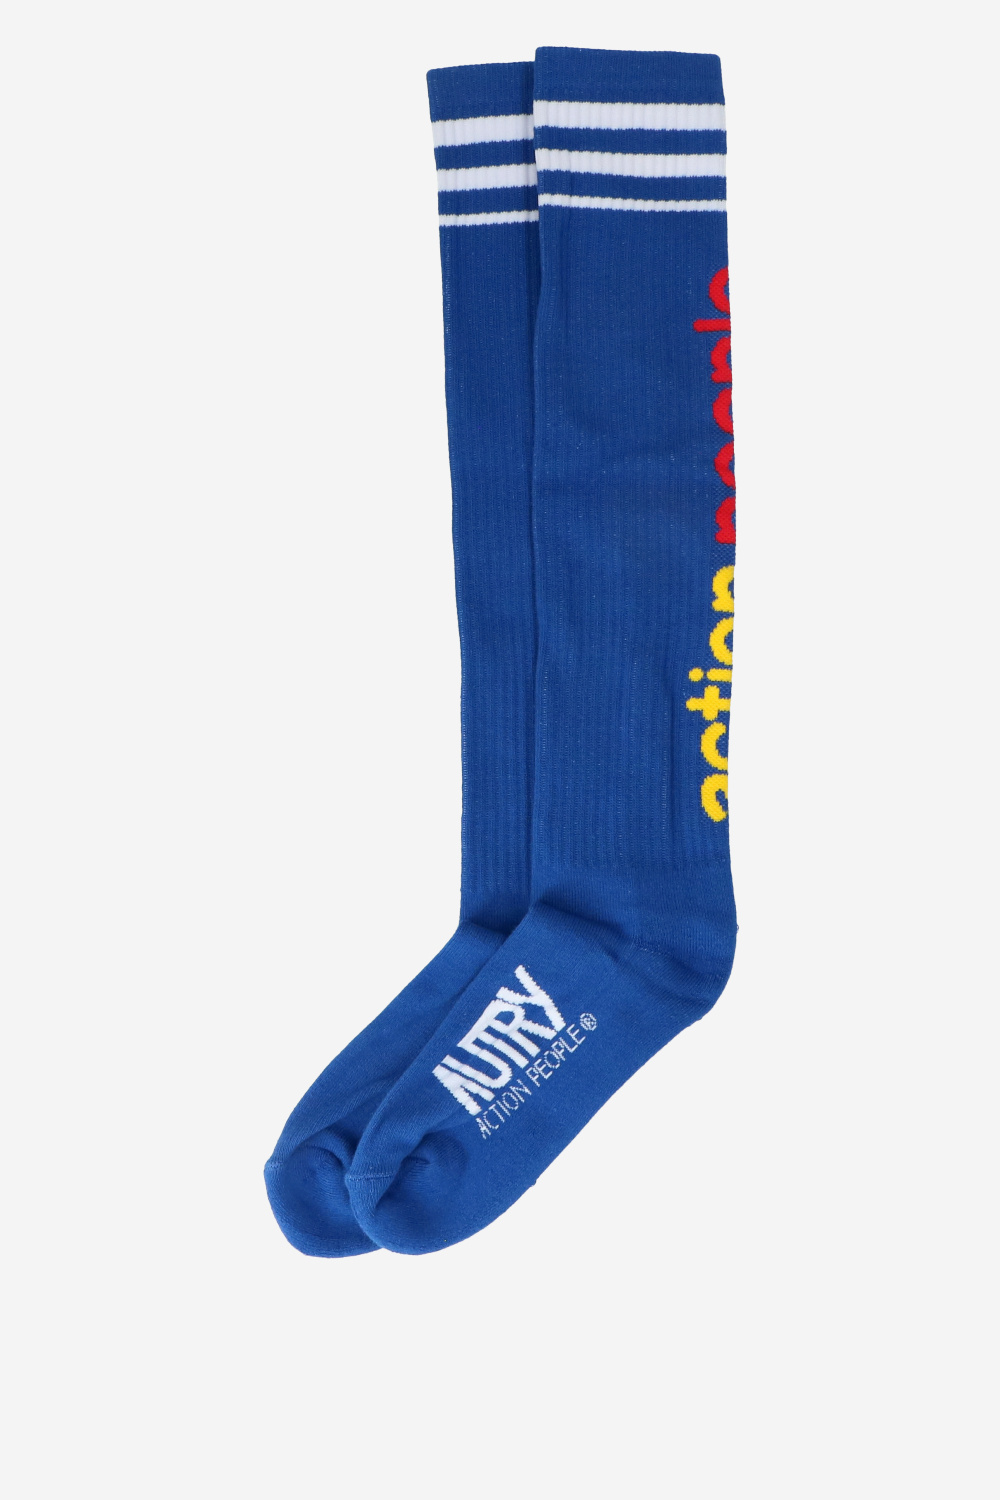 Autry Socks Blue